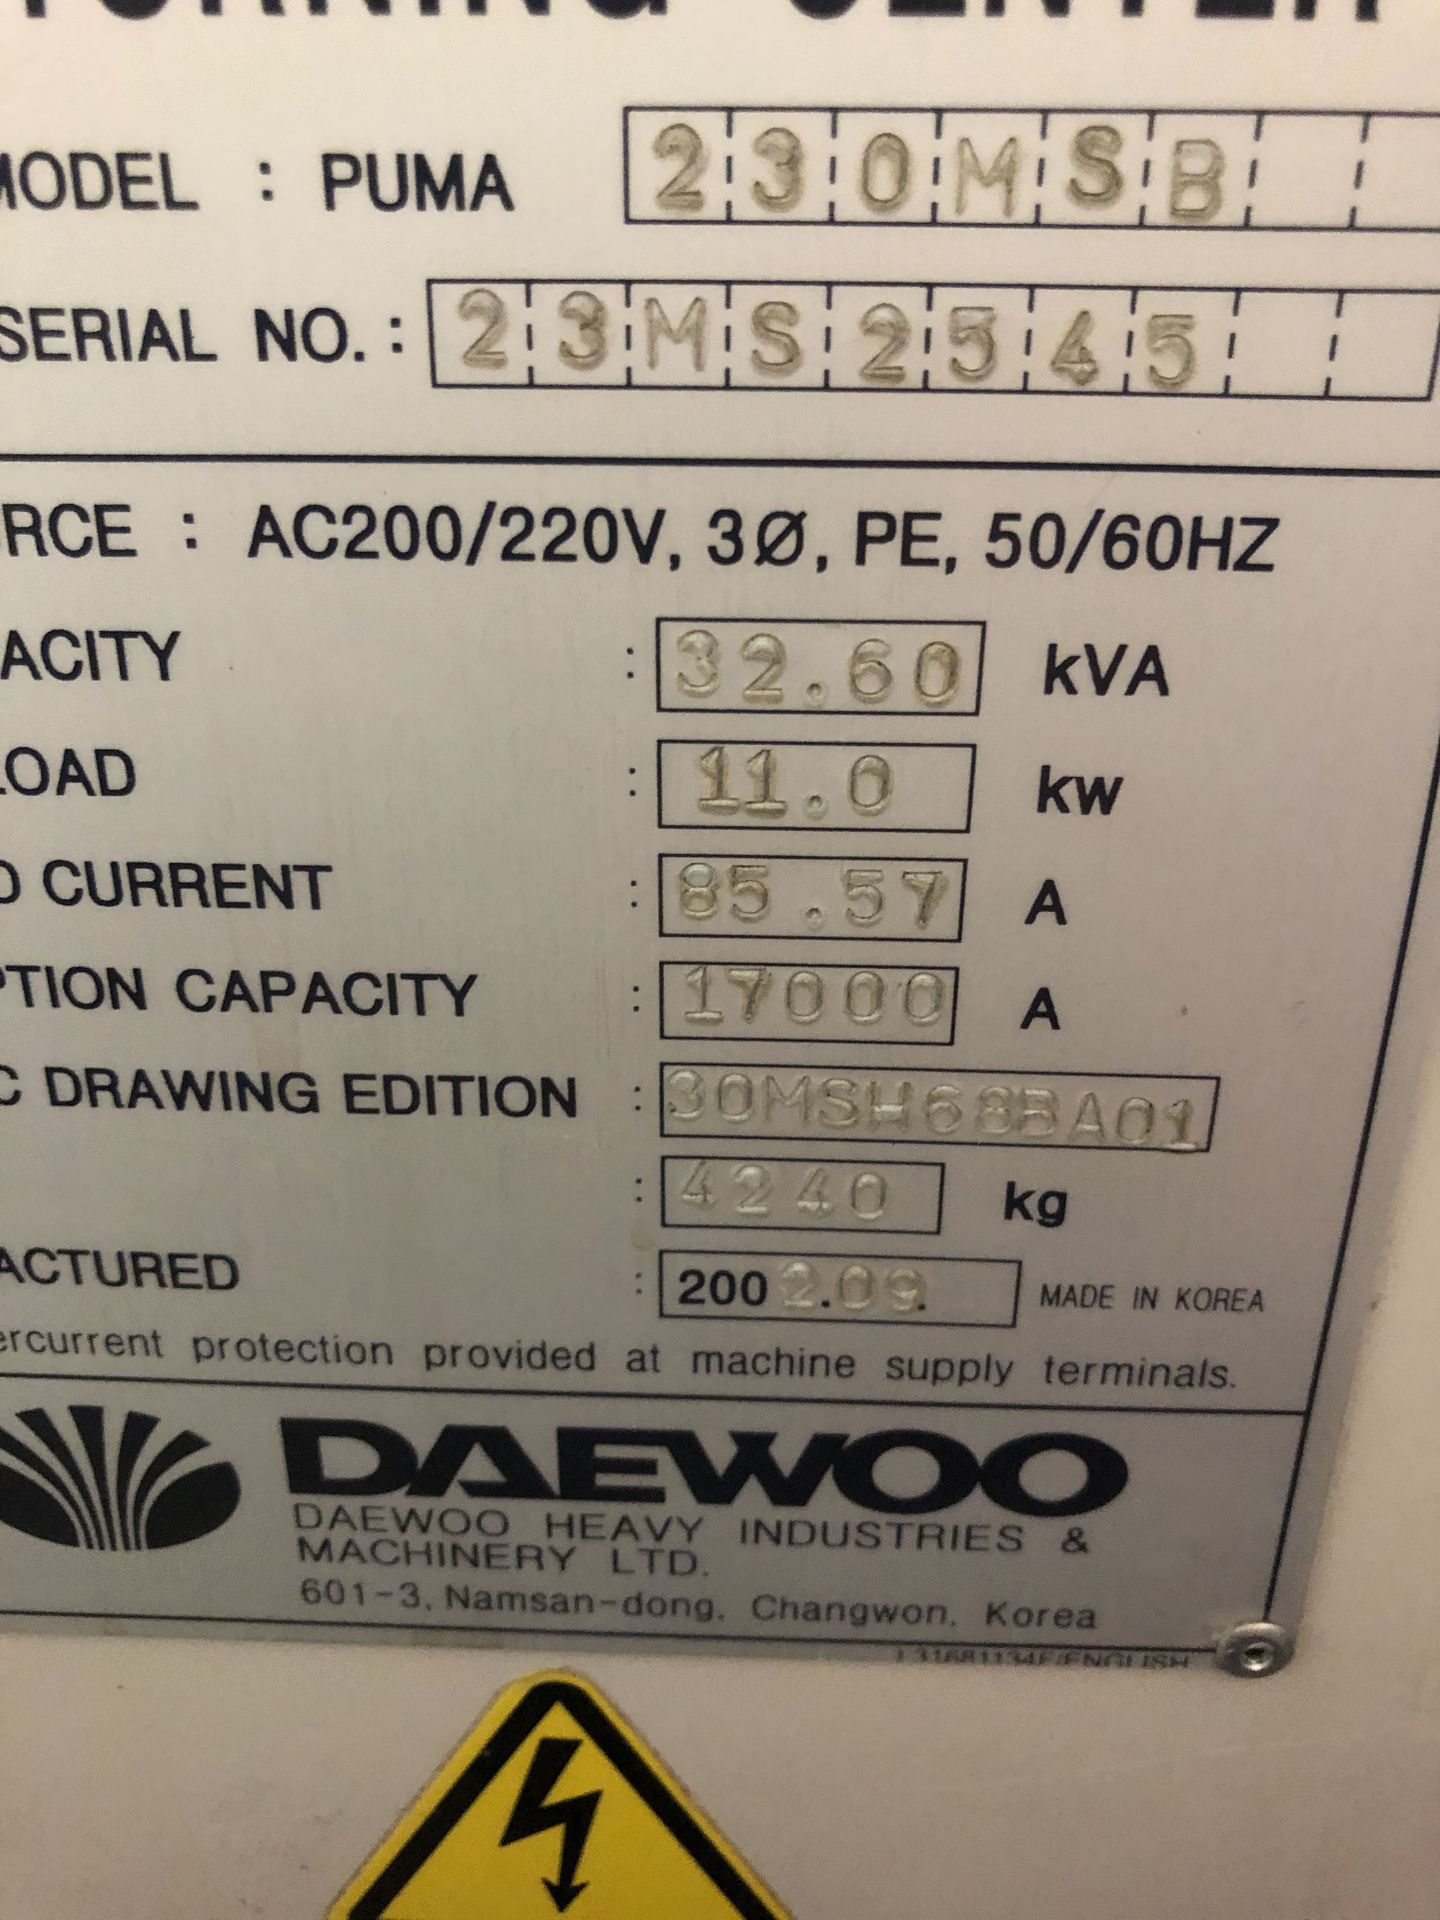 DAEWOO LATHE (CNC), MODEL. PUMA 230MSB, S/N 23MS2545 - Image 3 of 10